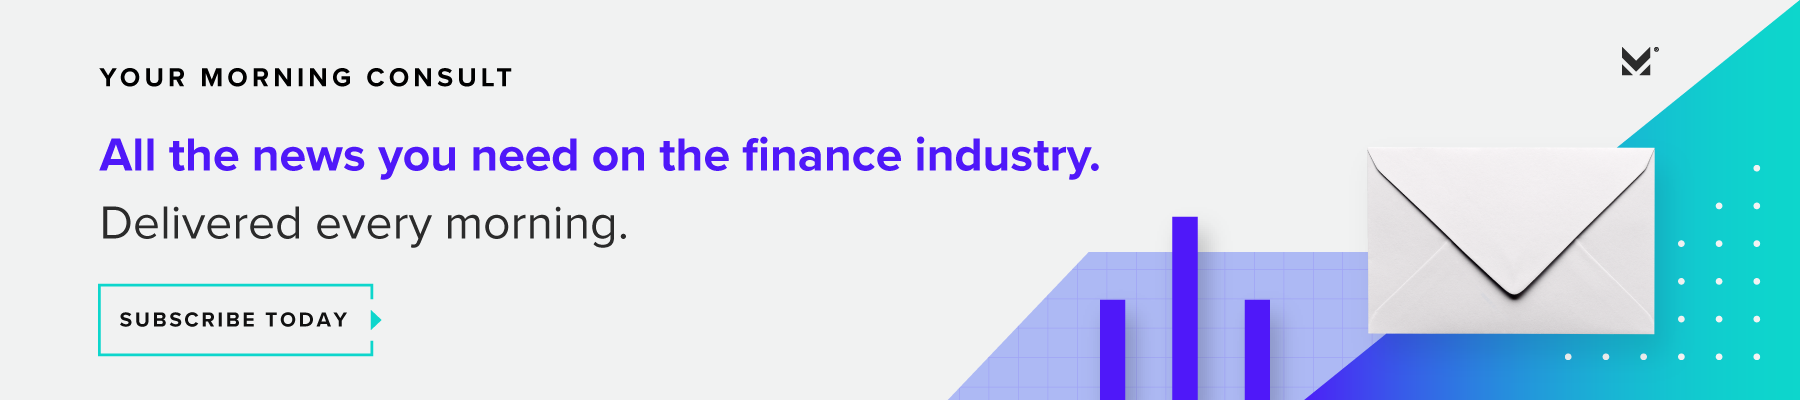 Anmeldung zum Newsletter der Finanzbranche